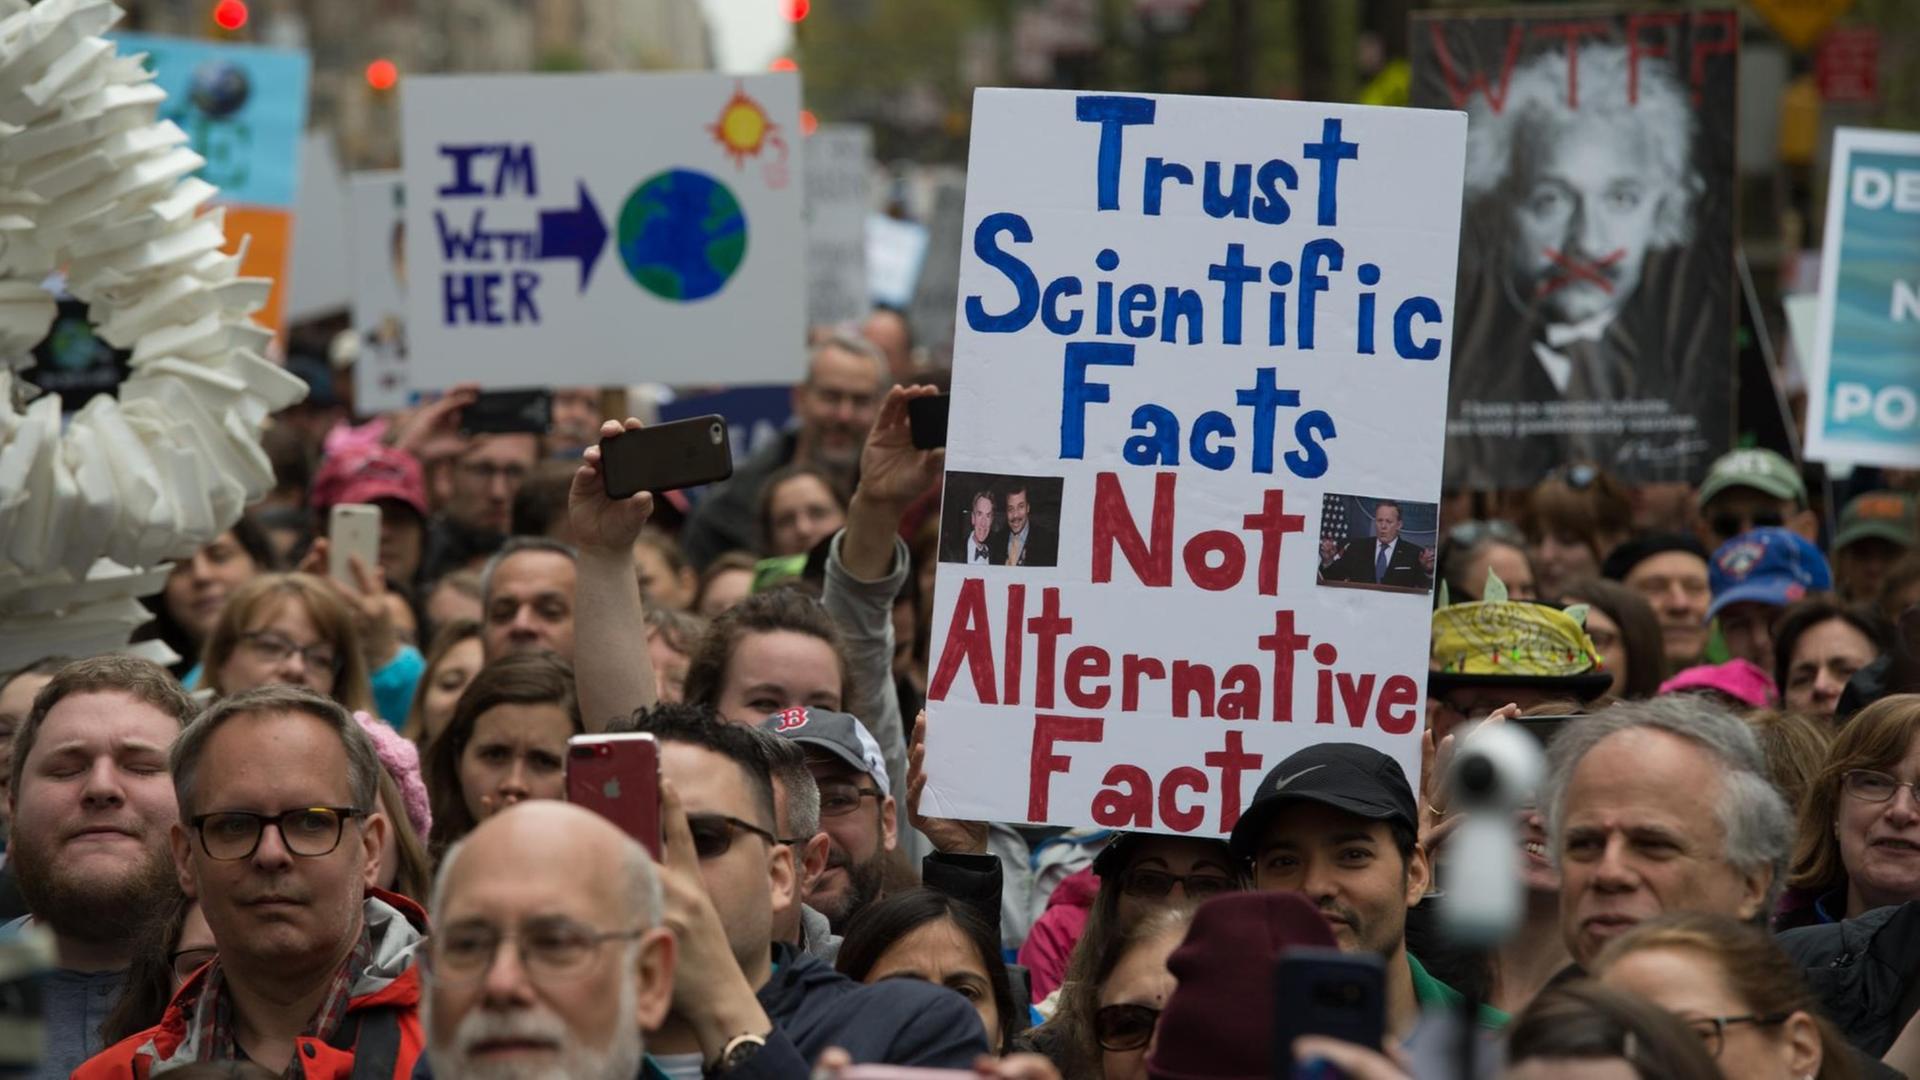 Teilnehmer des "March for Science" in New York fordern: "Glaubt wissenschaftlichen Fakten, nicht alternativen Fakten" im Jahre 2017